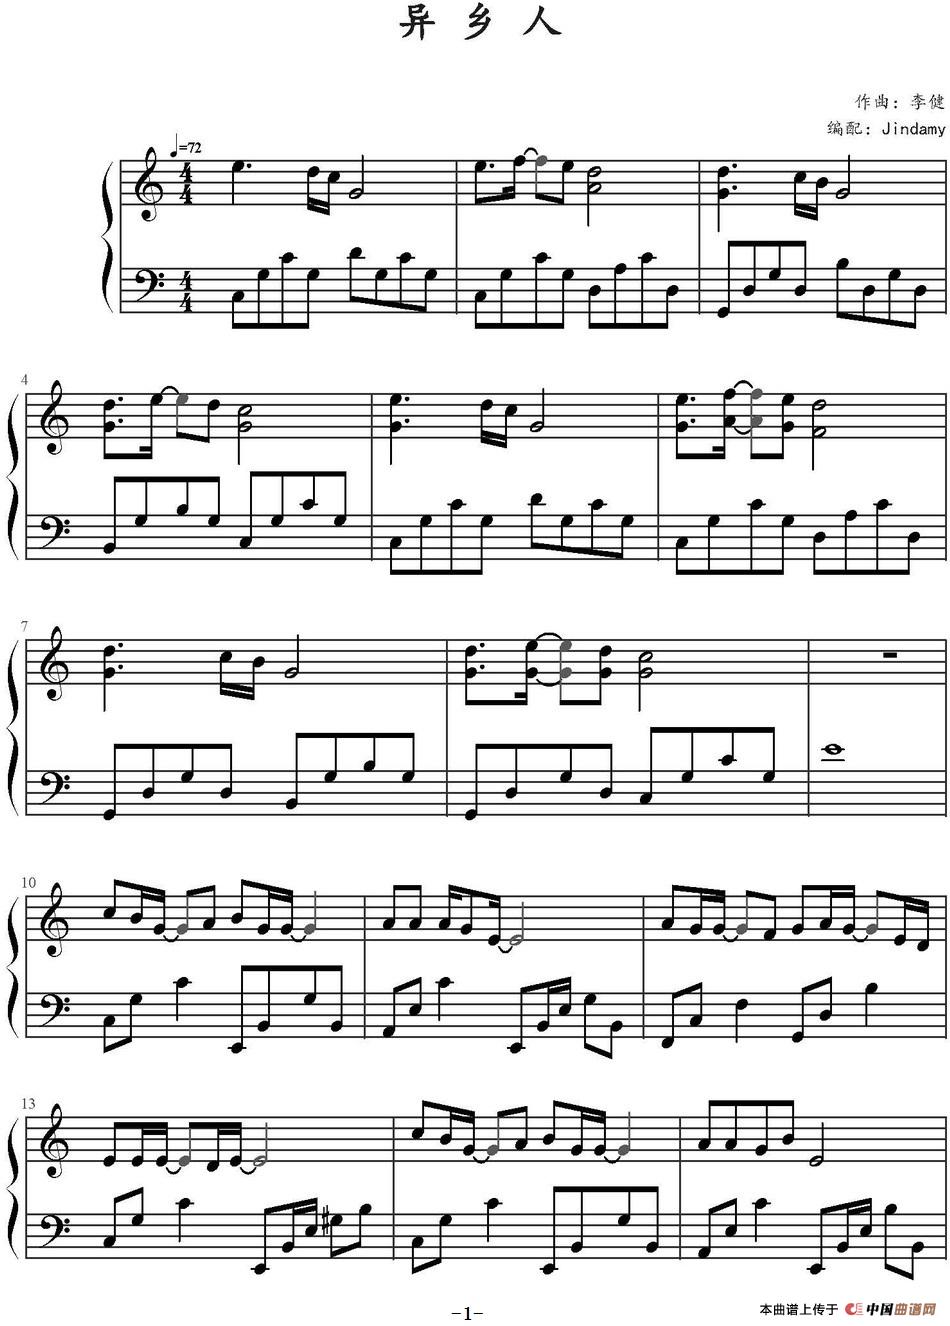 《异乡人》钢琴曲谱图分享